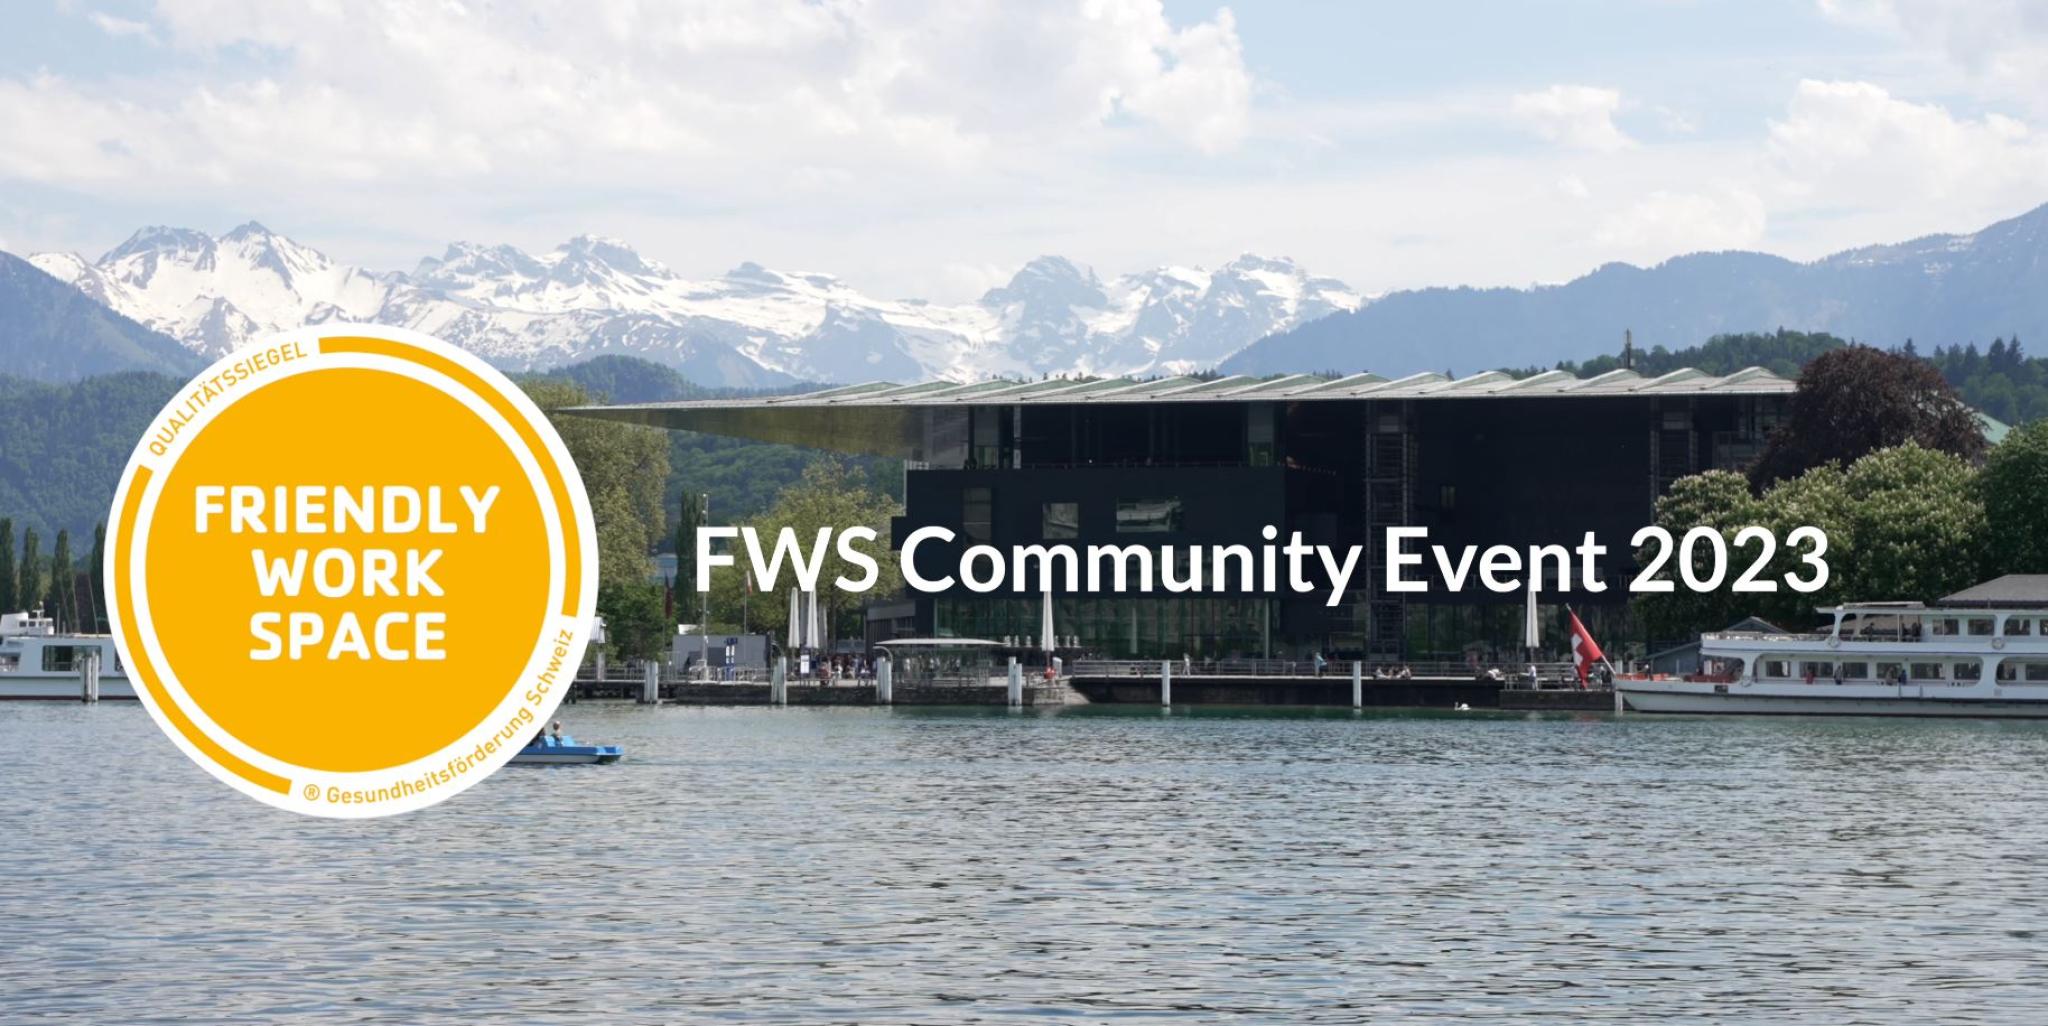 FWS Community Event 2023 DE /FR 